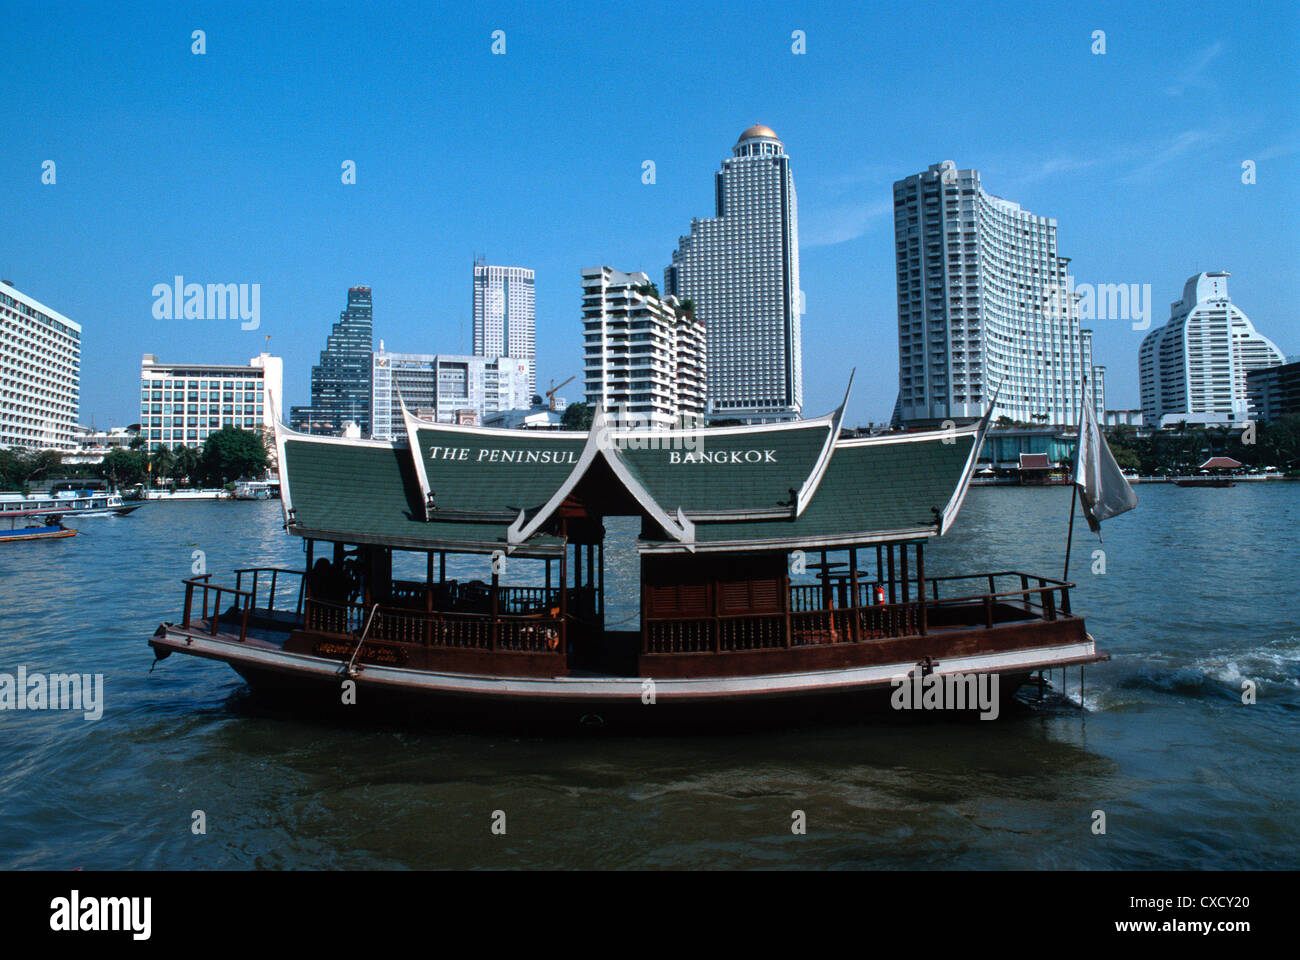 Peninsula Hotelfaehre against the skyline of Bangkok Bangrak Stock Photo